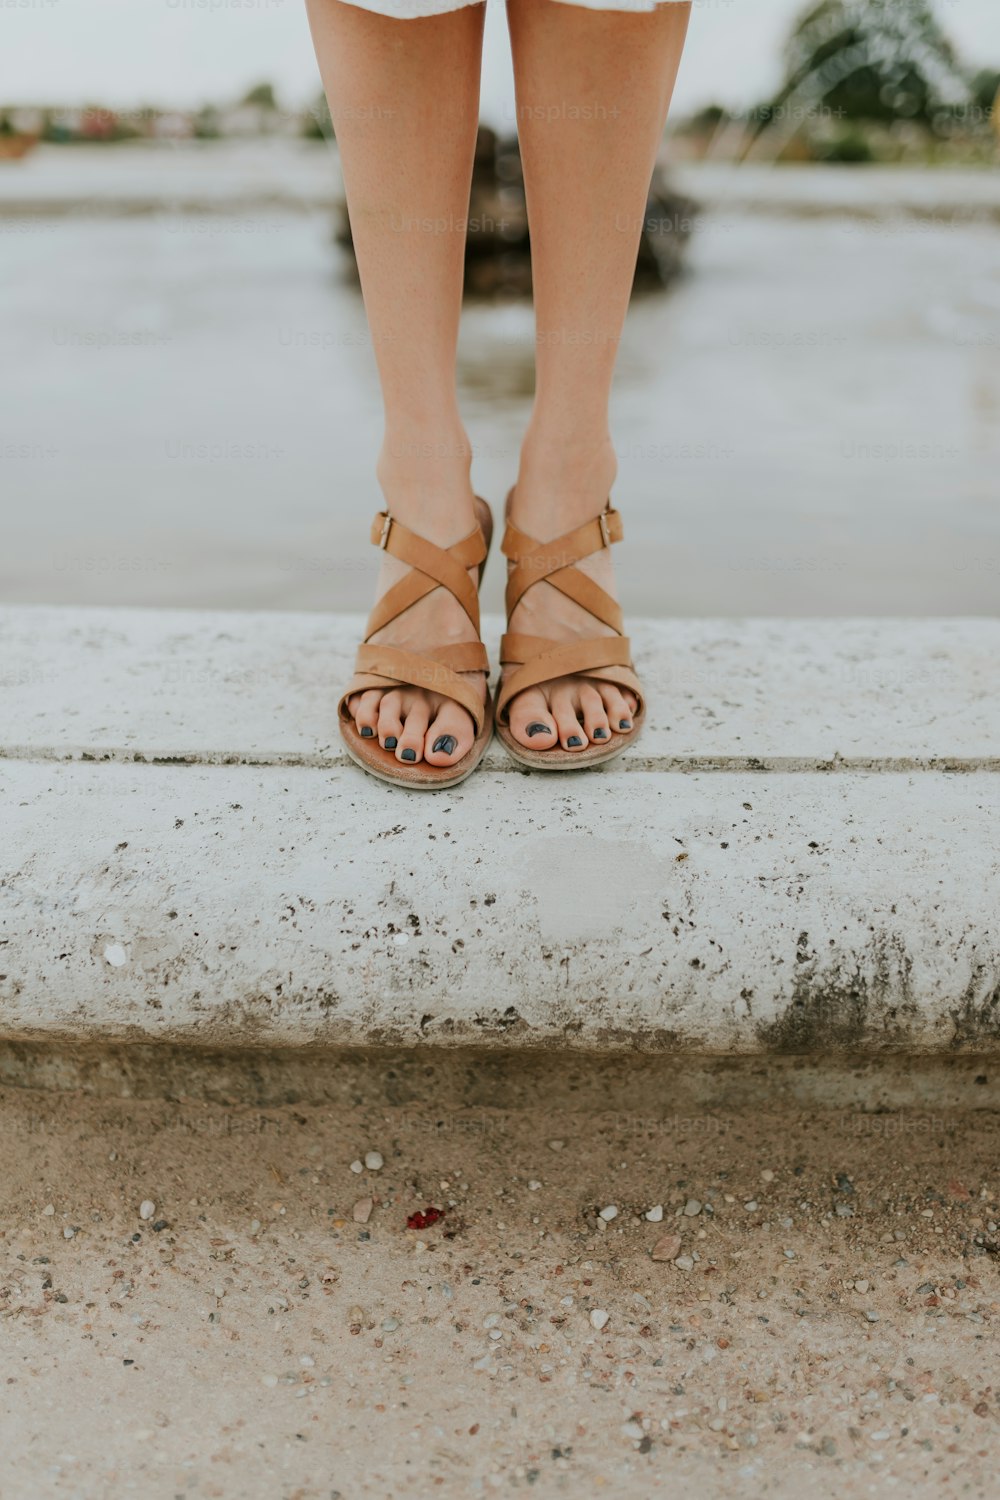 los pies de una mujer en sandalias de pie en una repisa